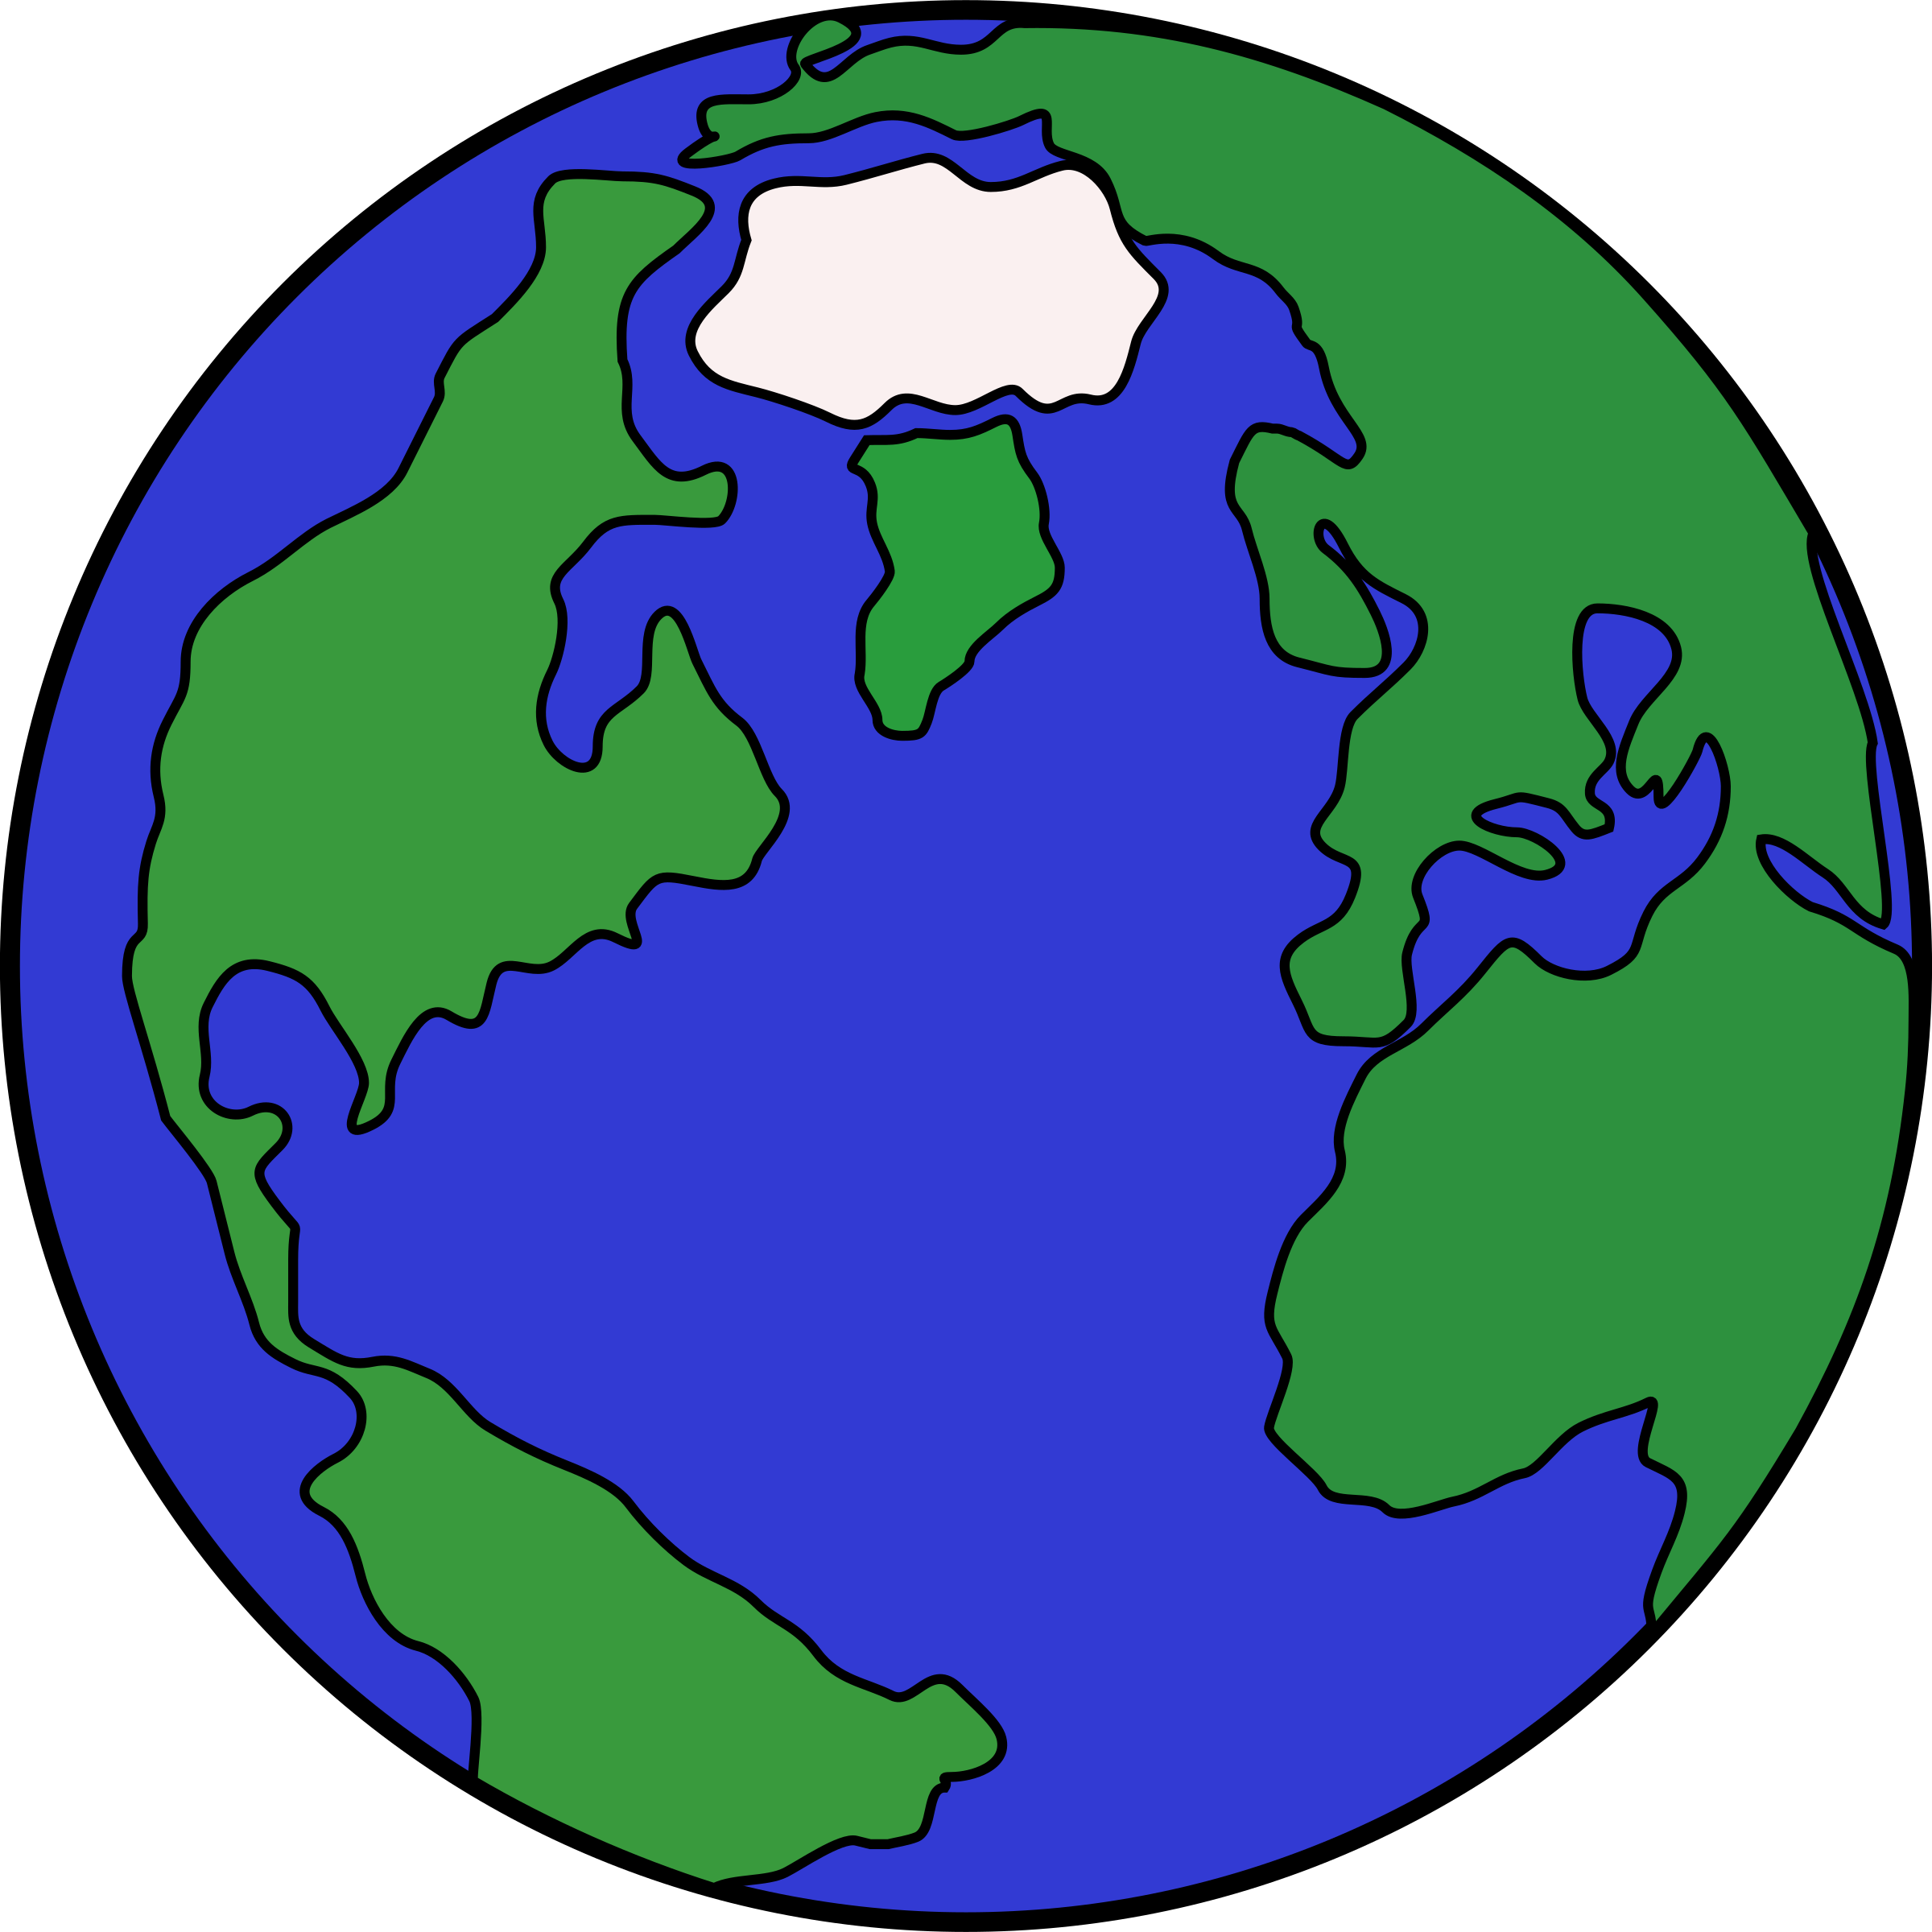 Печатают землю. Земля рисунок. Нарисовать земной шар. Планета земля рисунок. Изображение планеты земля для детей.